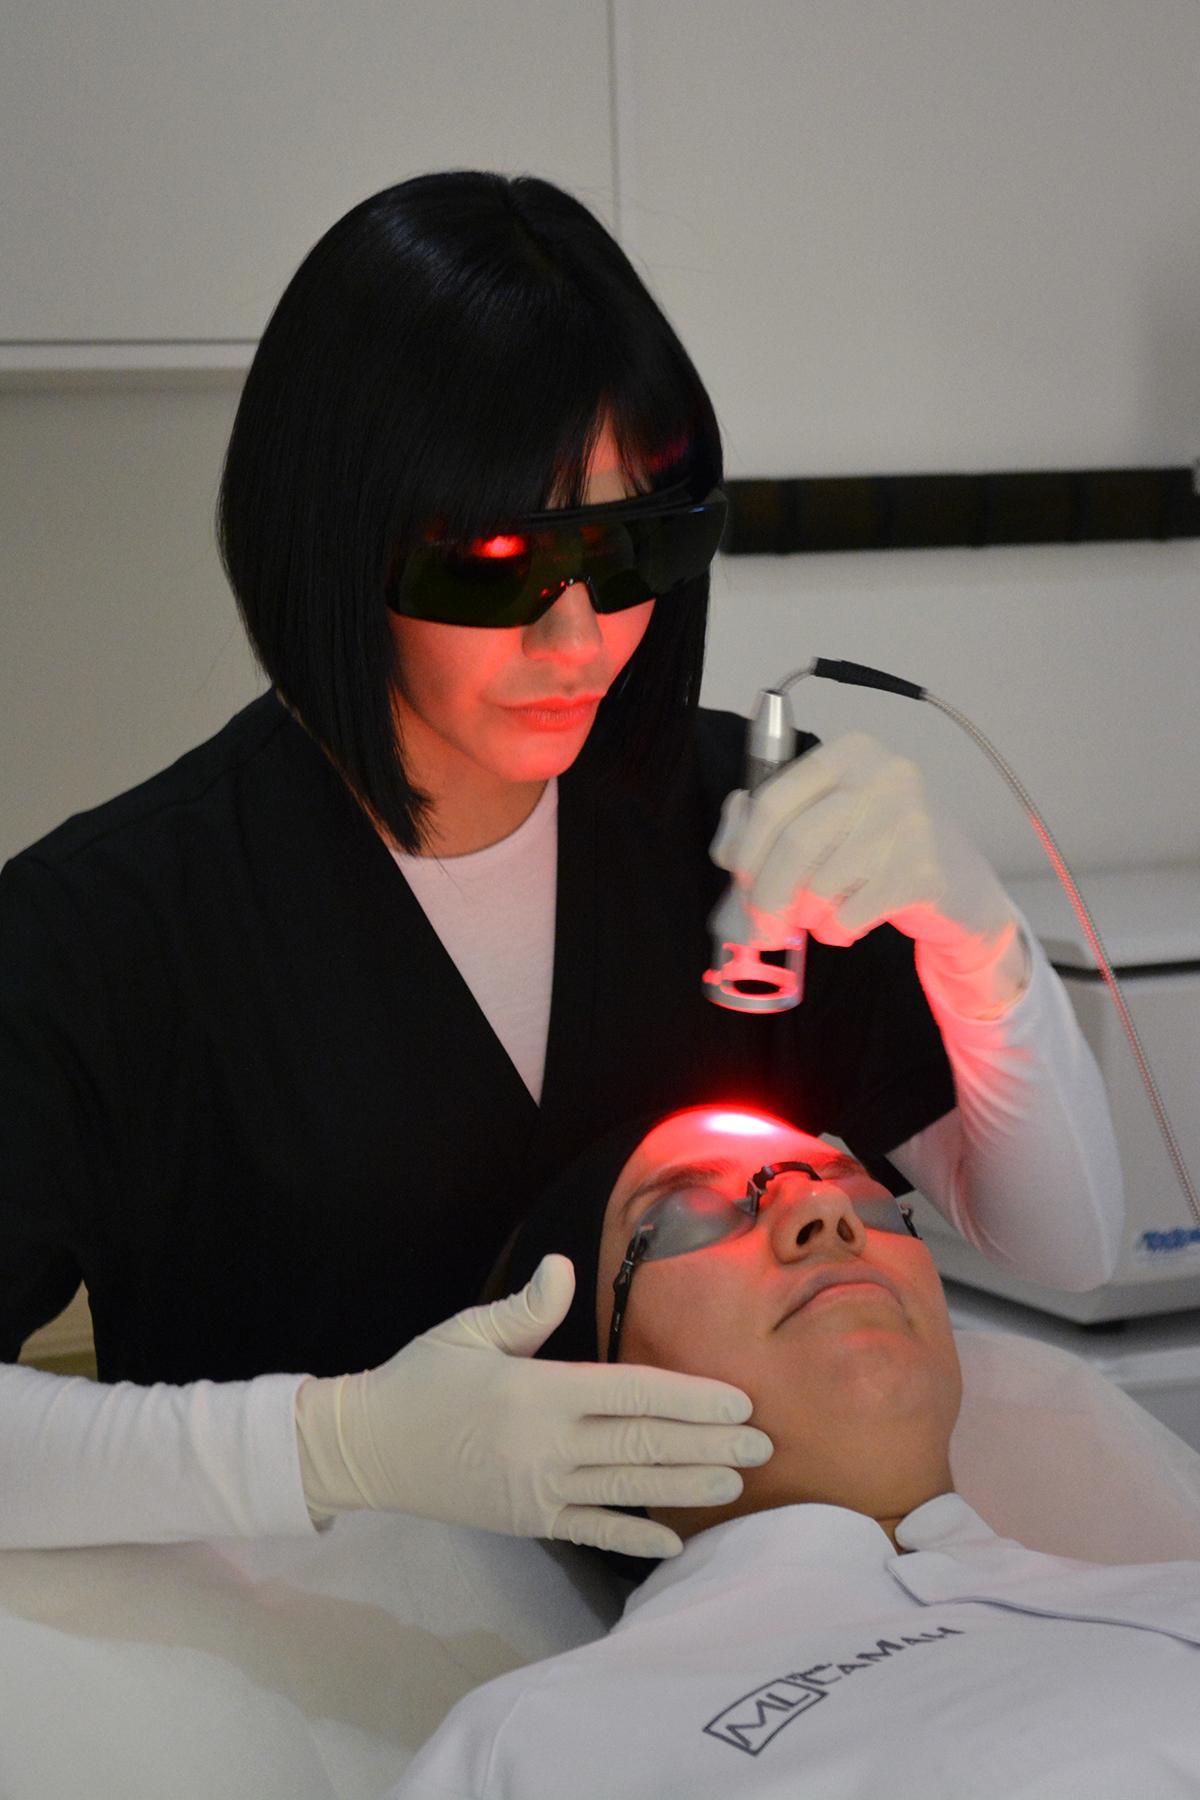 Tratamiento de terapia facial con láser realizado por la doctora Mery Lamah.